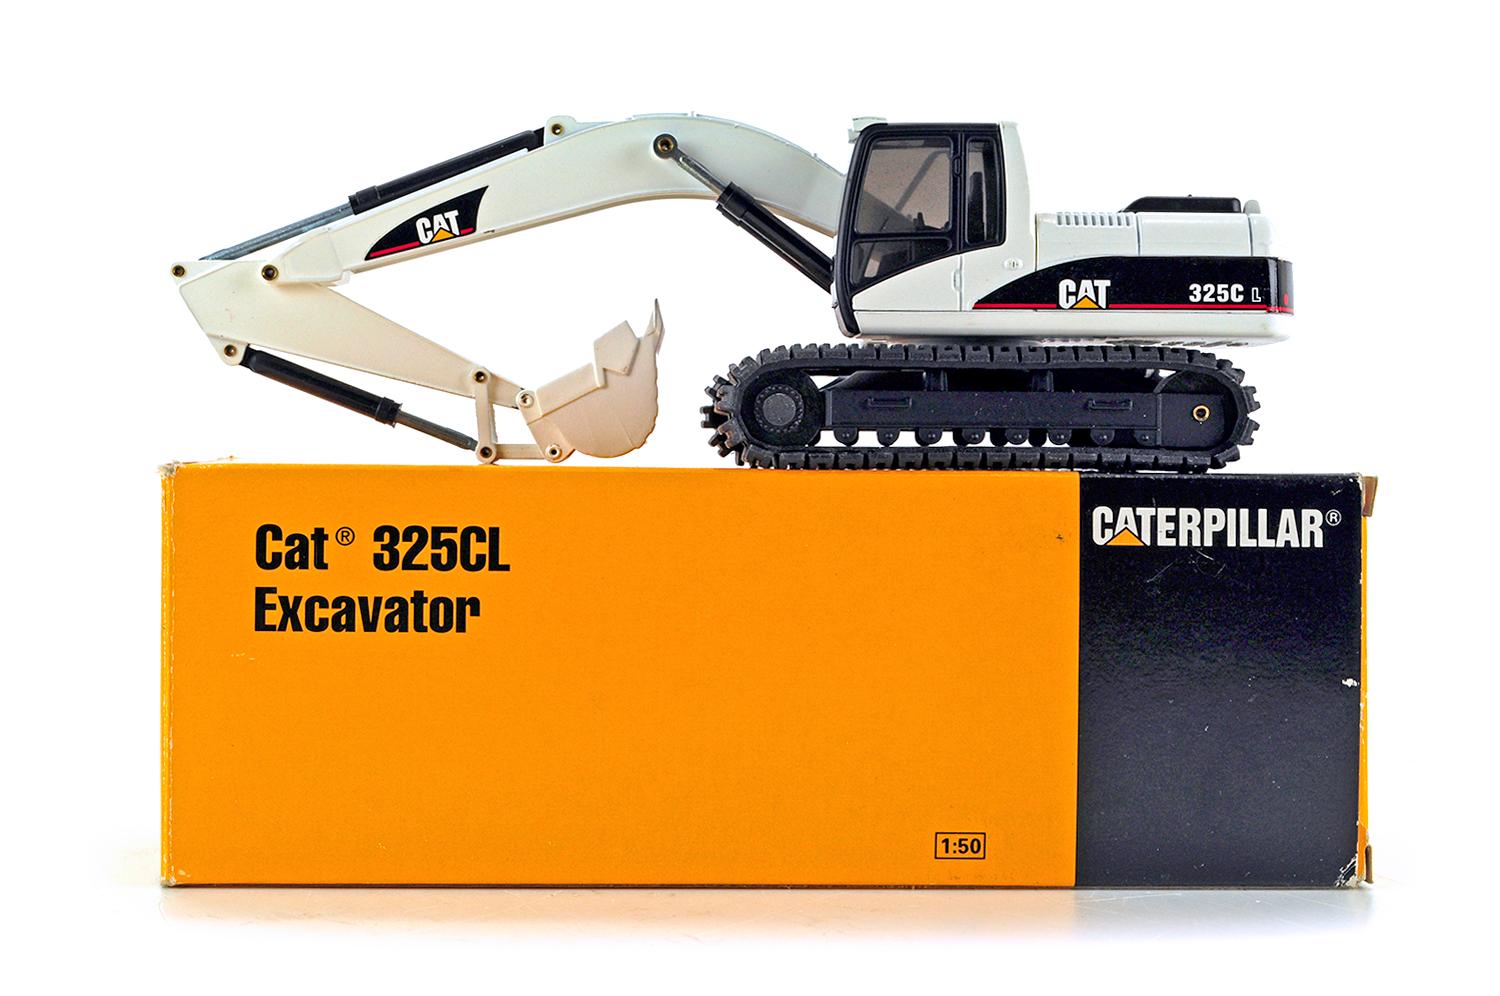 Caterpillar 325CL Excavator - White